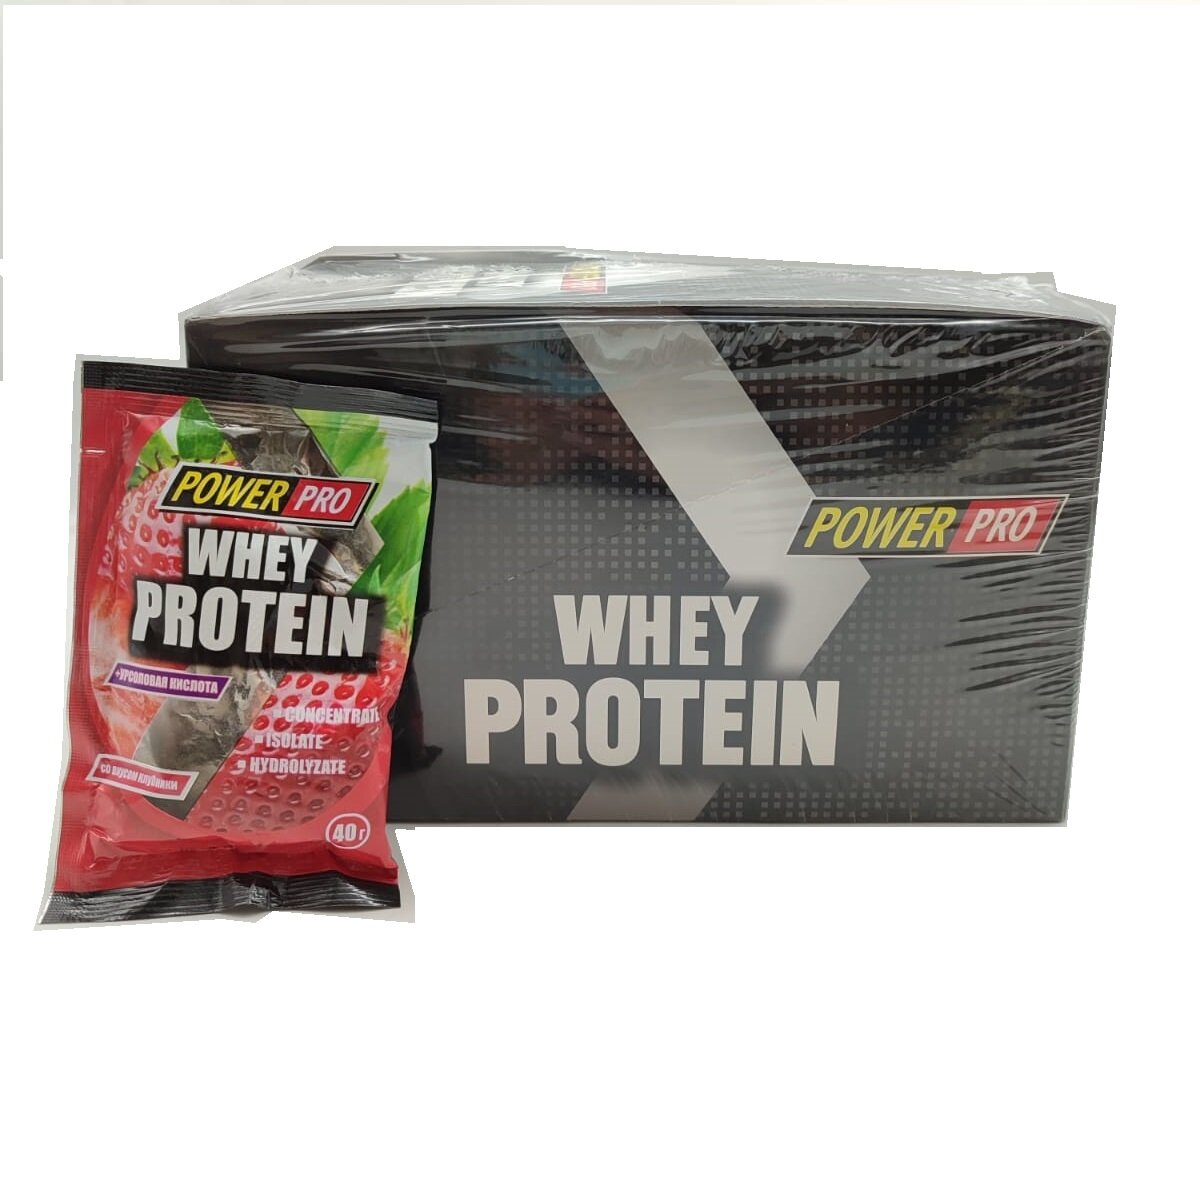 Power Pro Whey Protein 15 шт 40 гр (Power Pro) Клубника